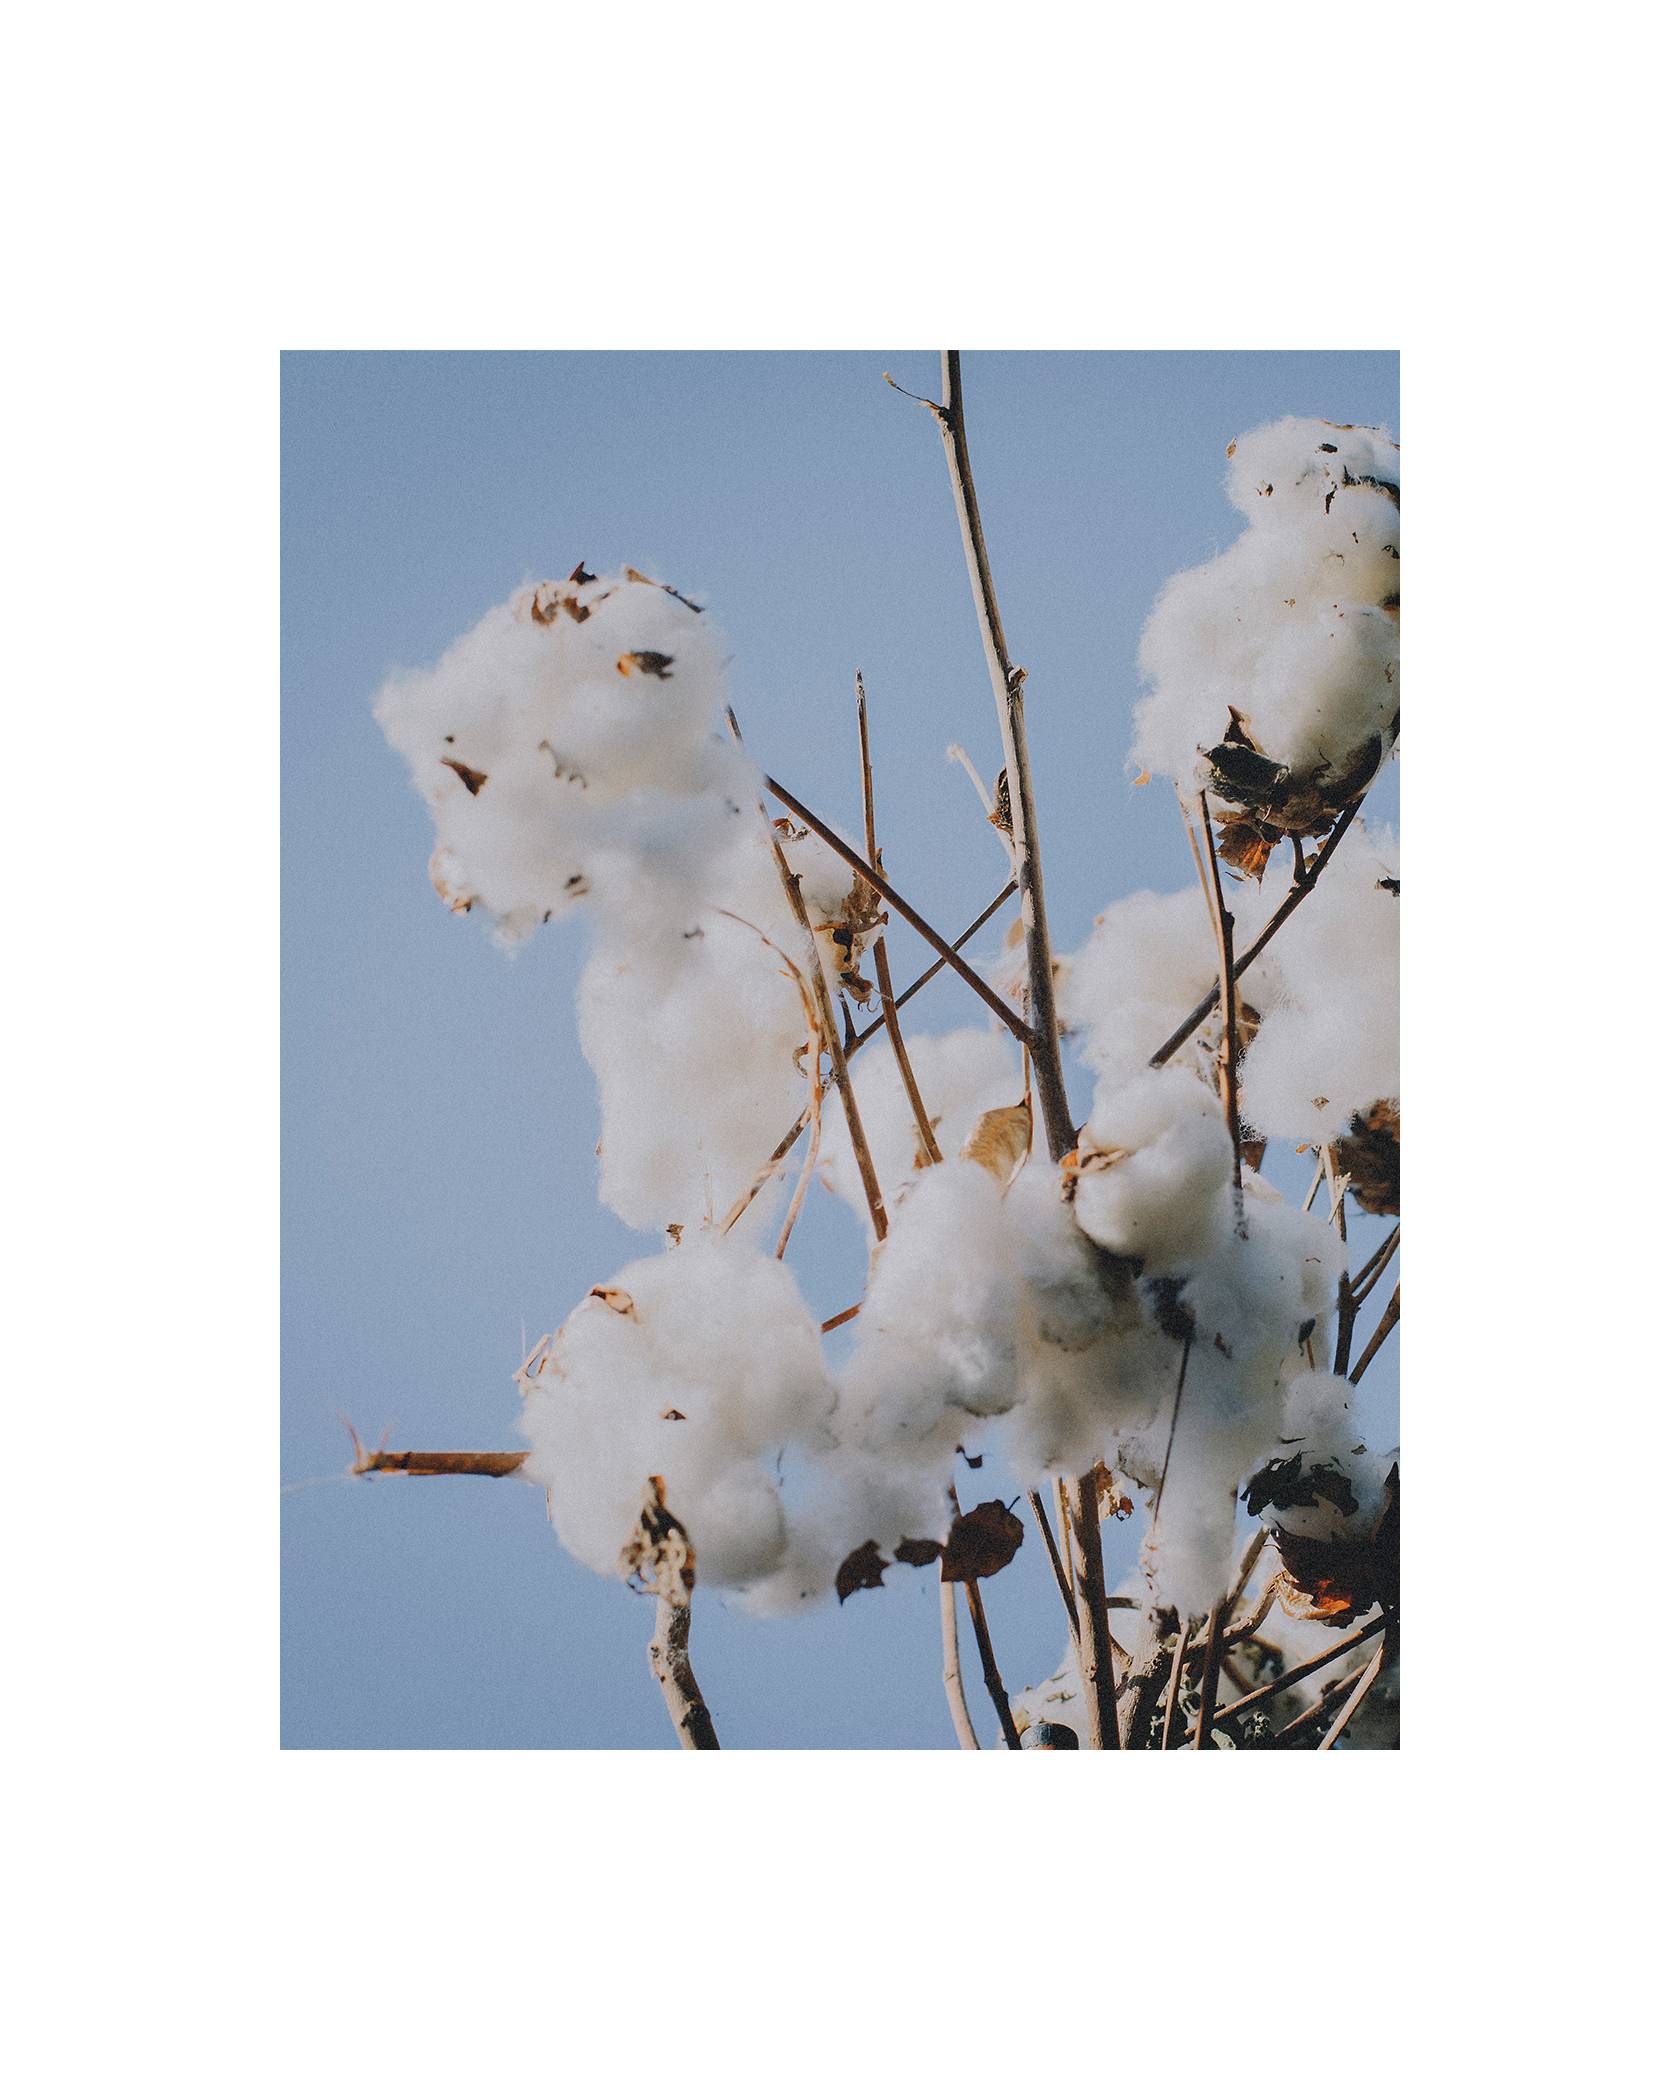 A Cotton Plant